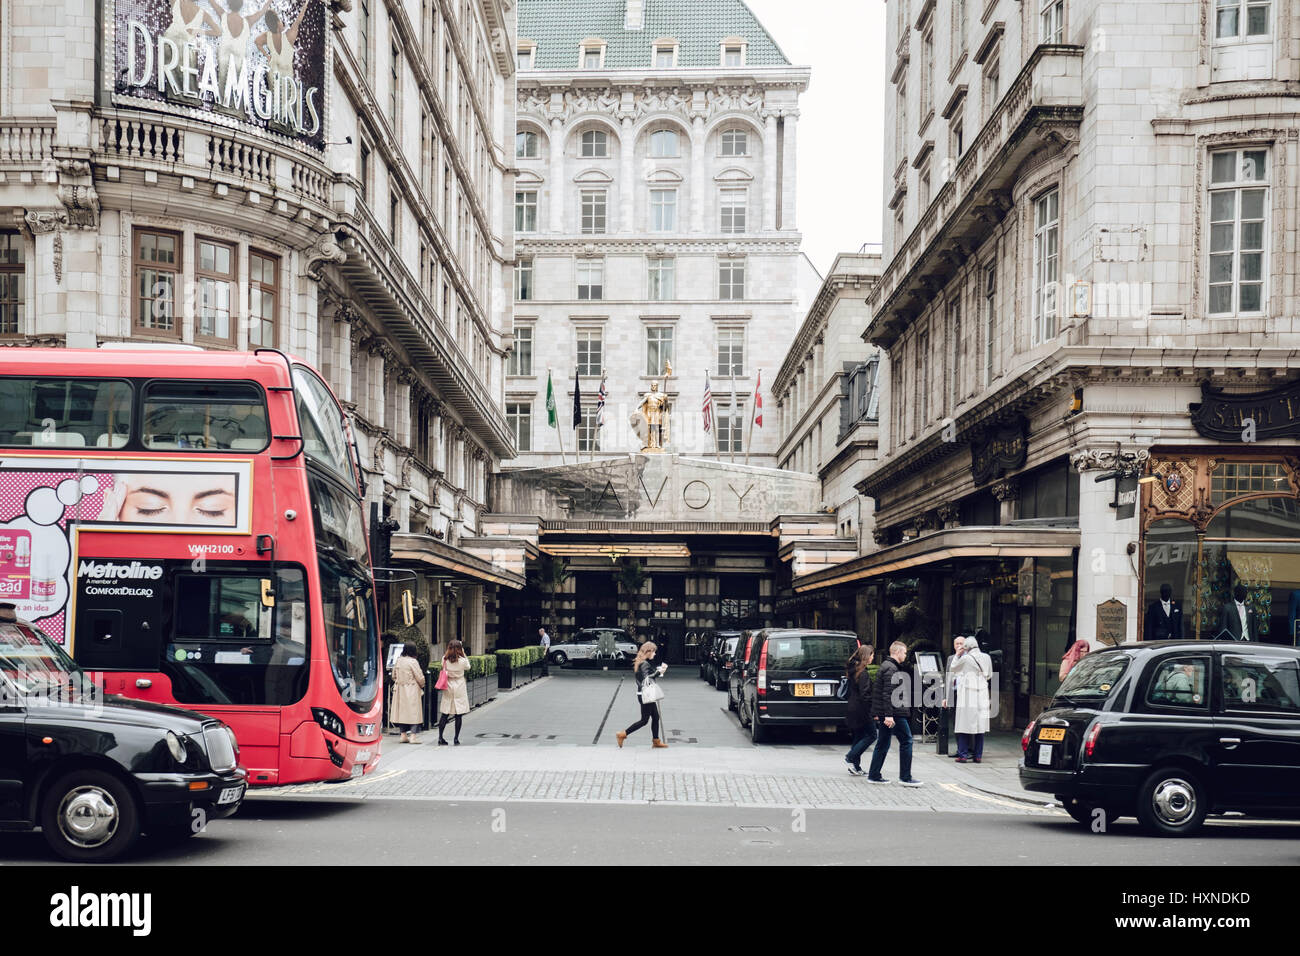 L'Hôtel Savoy, le Strand, London à partir de la rue. Les bus londoniens, les marcheurs et les taxis noirs visibles. Banque D'Images